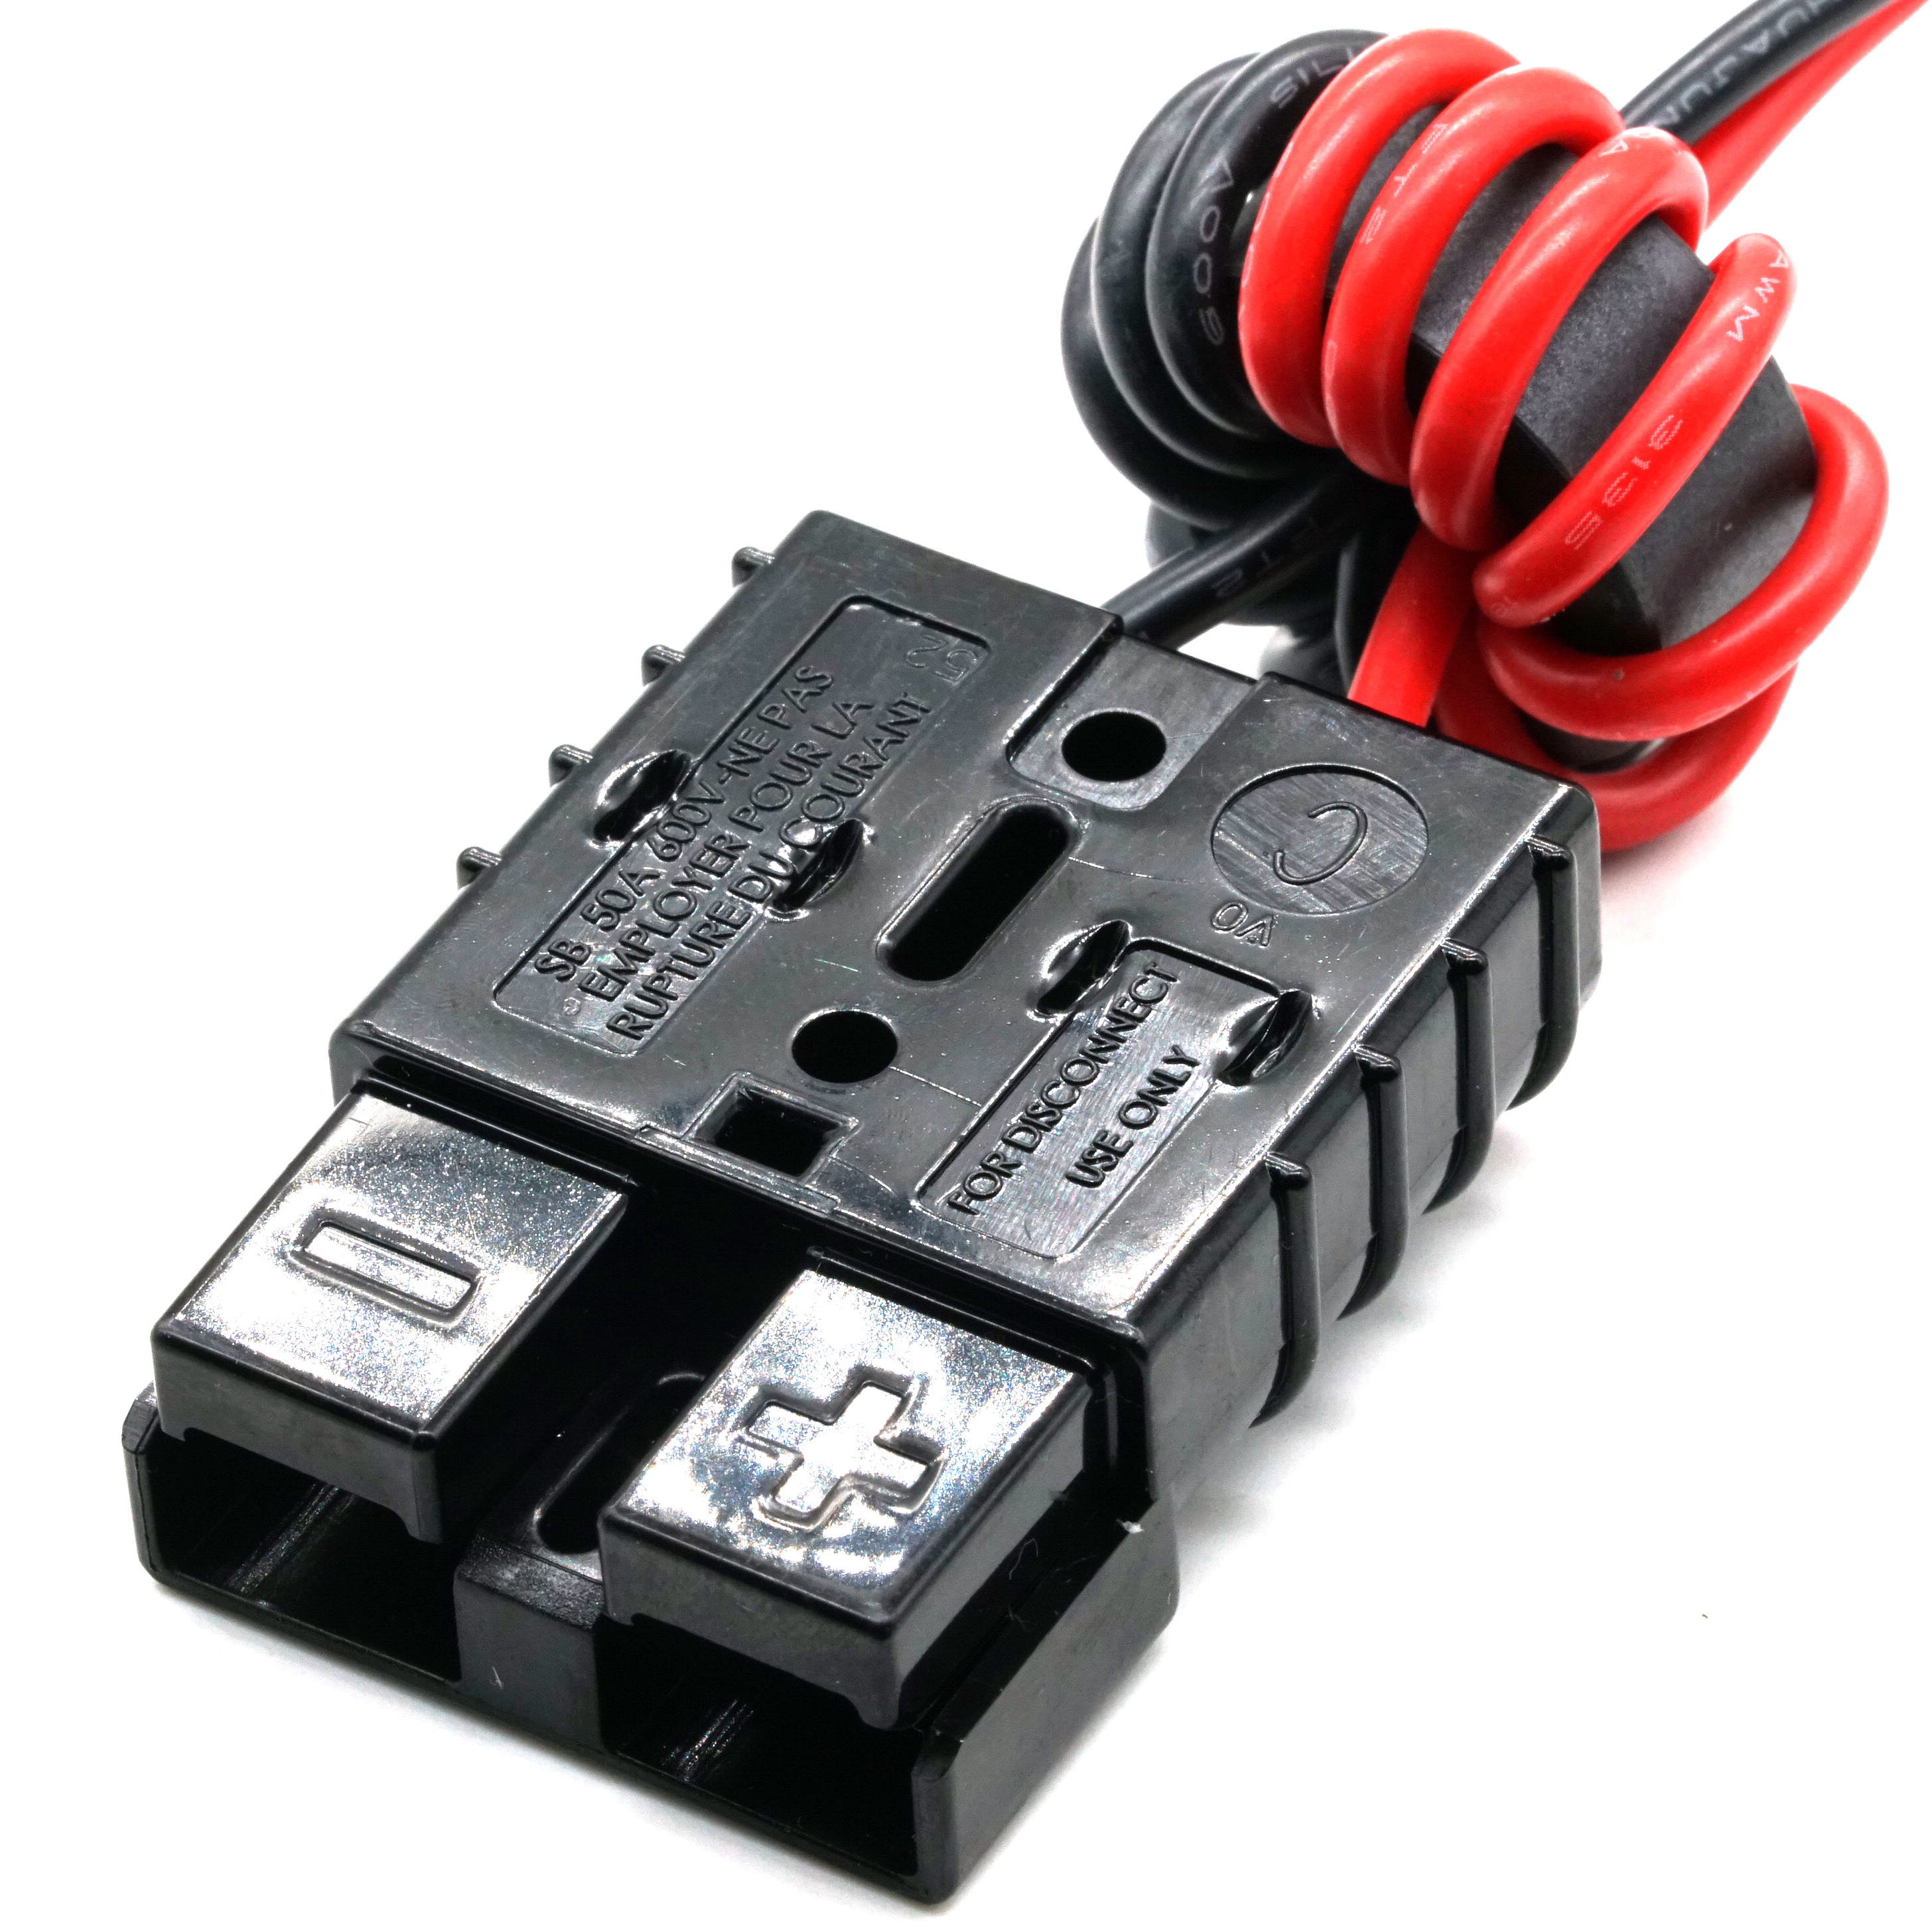 Anderson Power Connector voor ontkoppelen van anti-interferentie ferriet kabelboom met XT30 plug